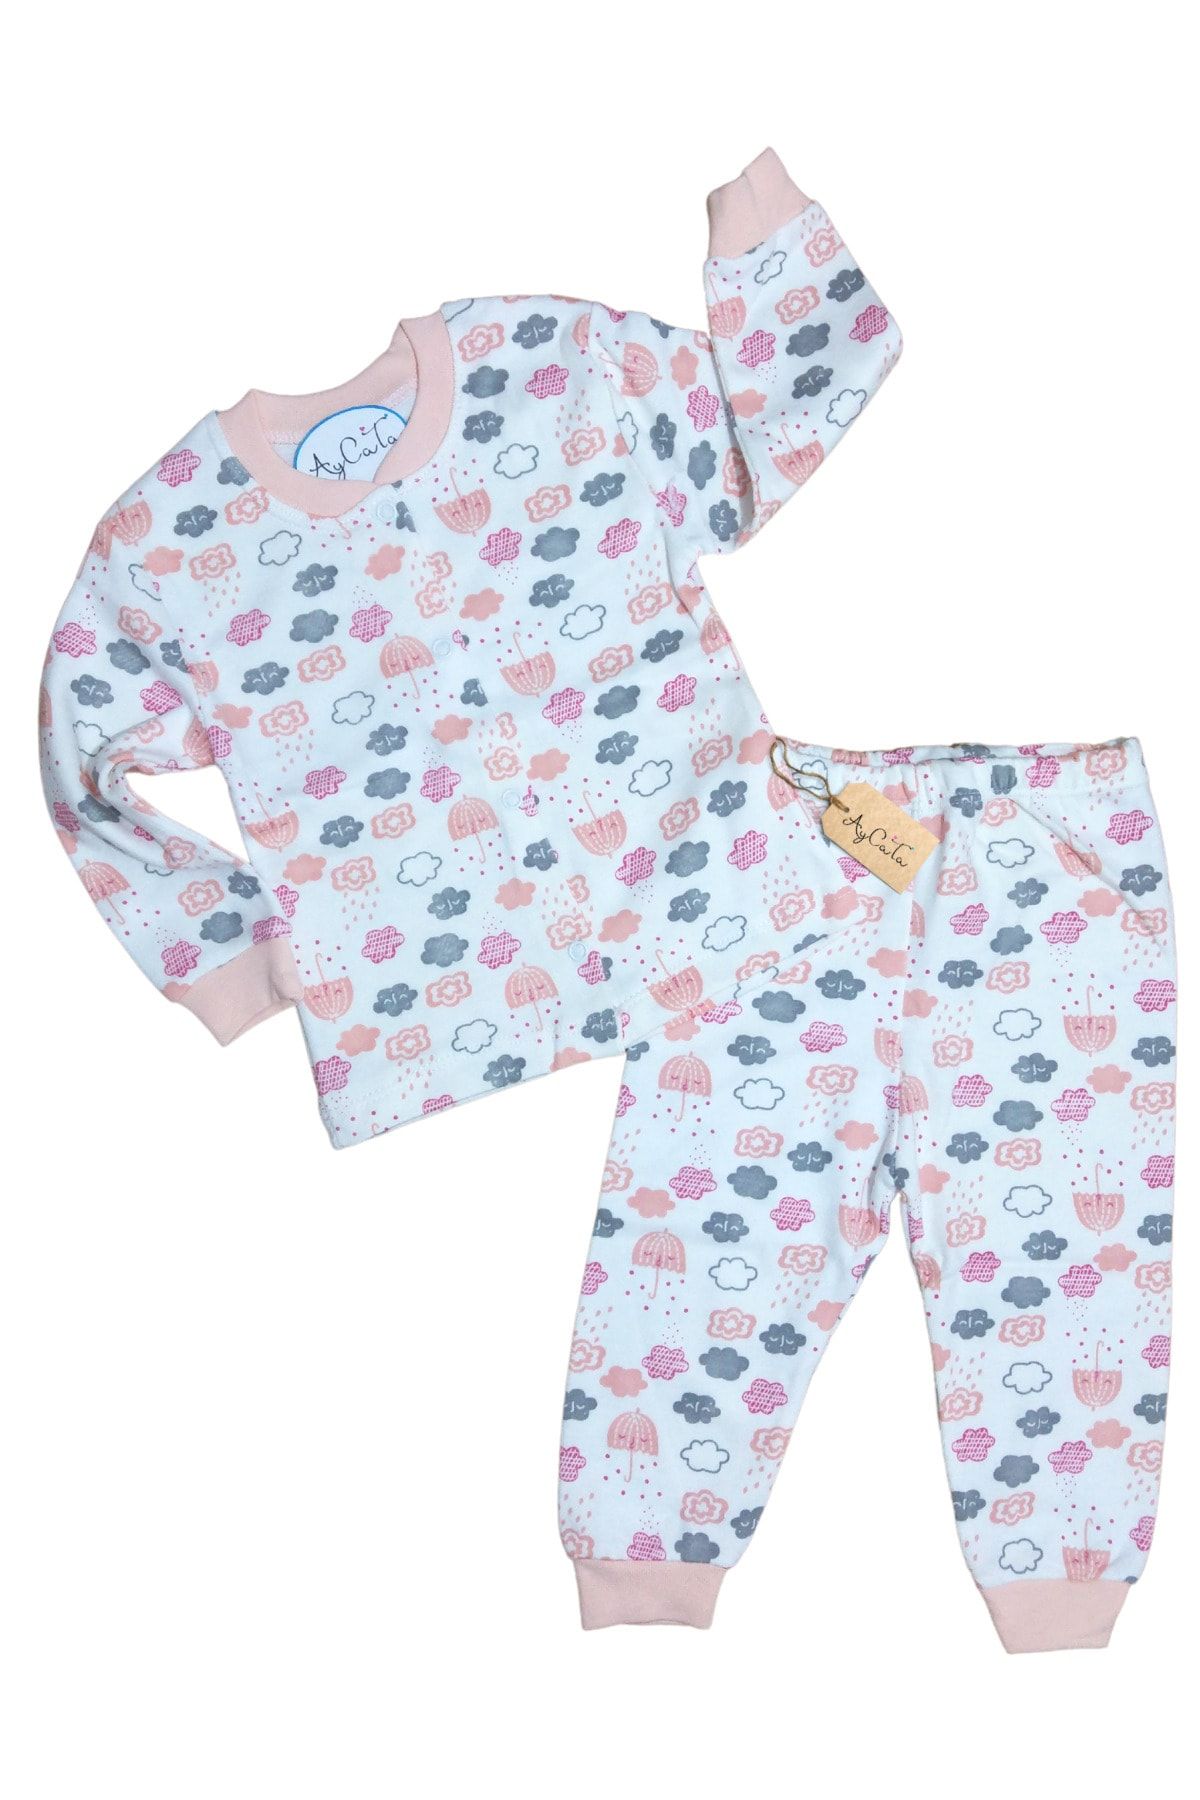 AyCaTa Kız Bebek Çıtçıtlı Pijama Takımı